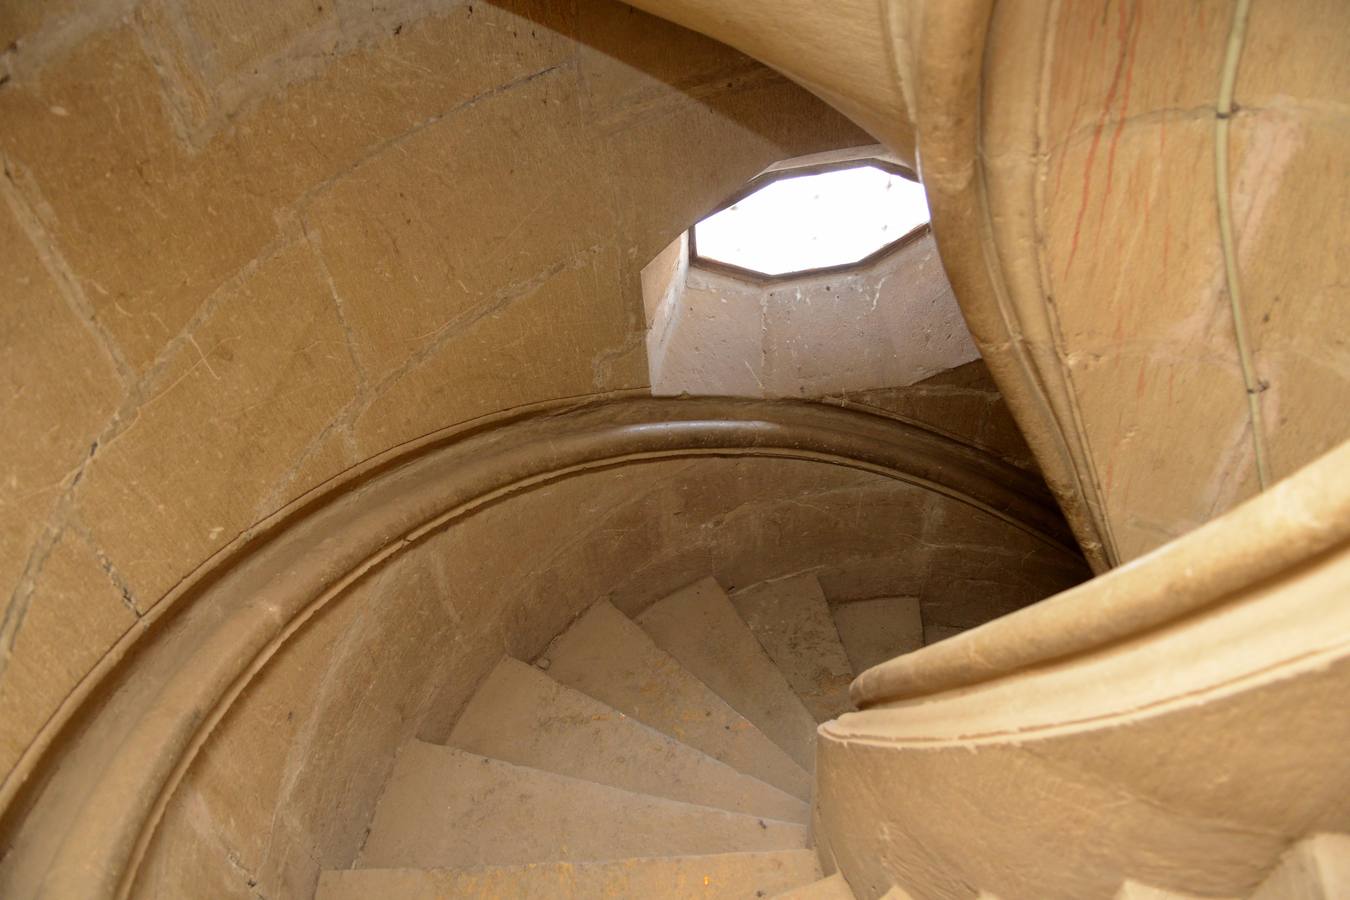 Las escaleras de acceso a la torre de Guadix ofrecen una solución arquitectónica ideada por Leonardo 